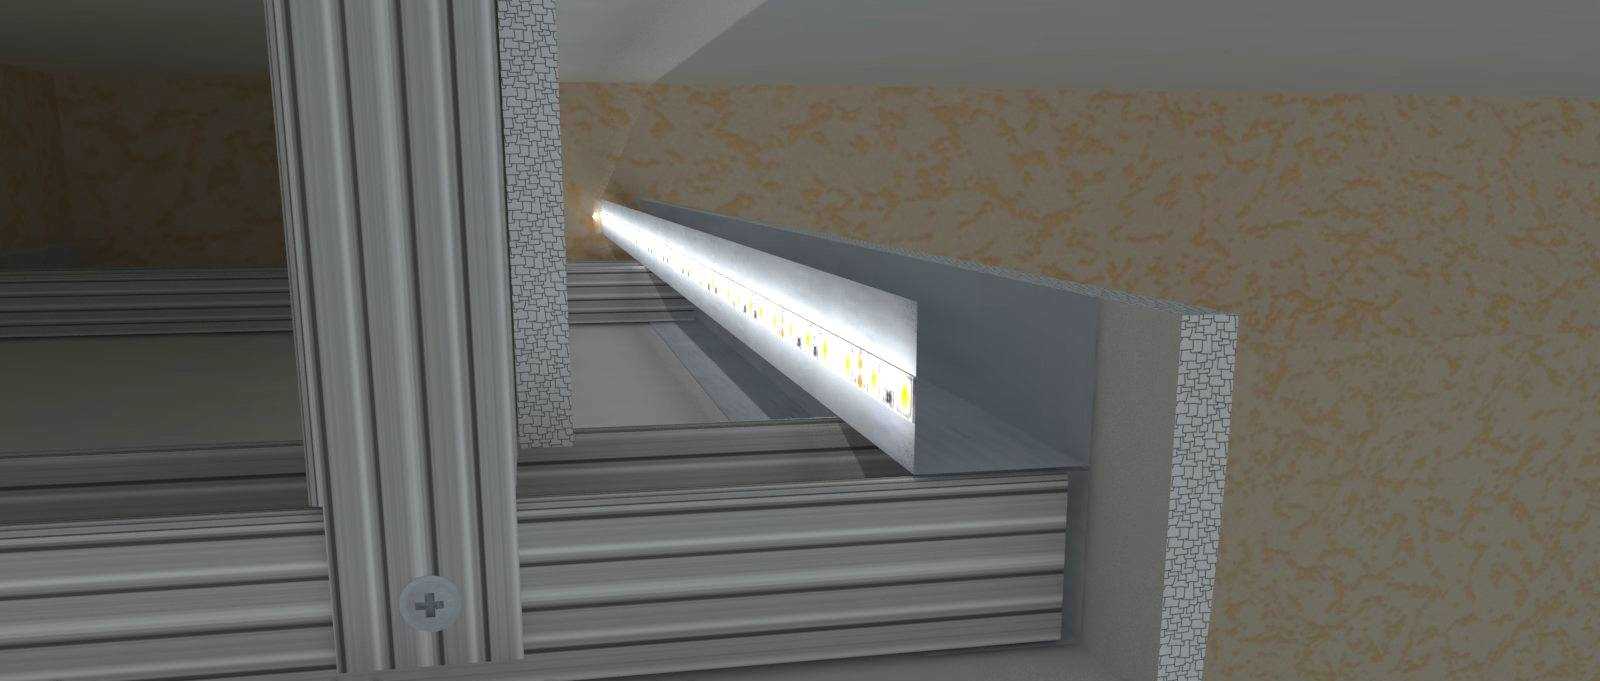 Установка светодиодных линий в потолке из гипсокартона. методы монтажа конструкции